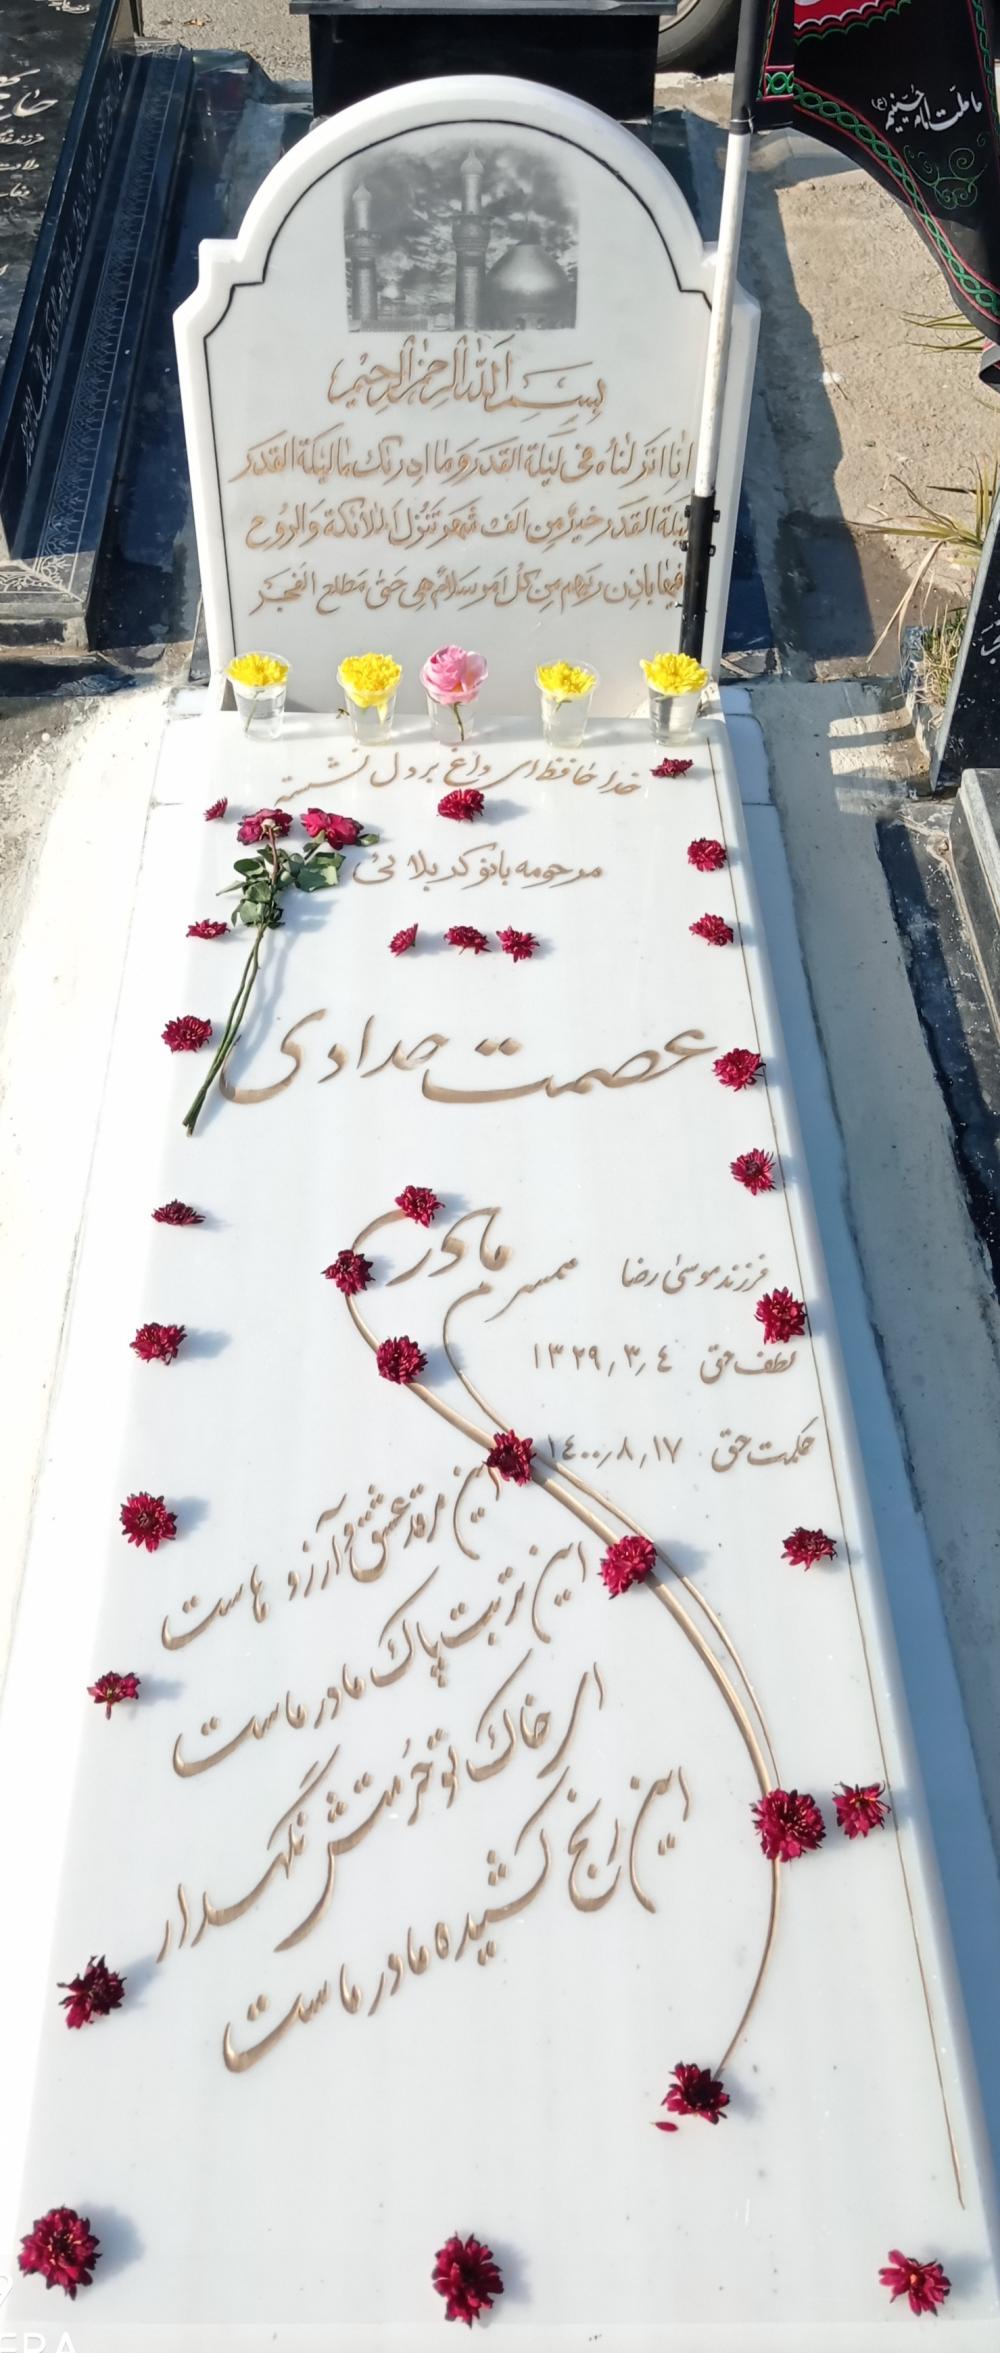 یادبود عزیز سفر کرده شادروان مرحومه کربلایی عصمت حدادی